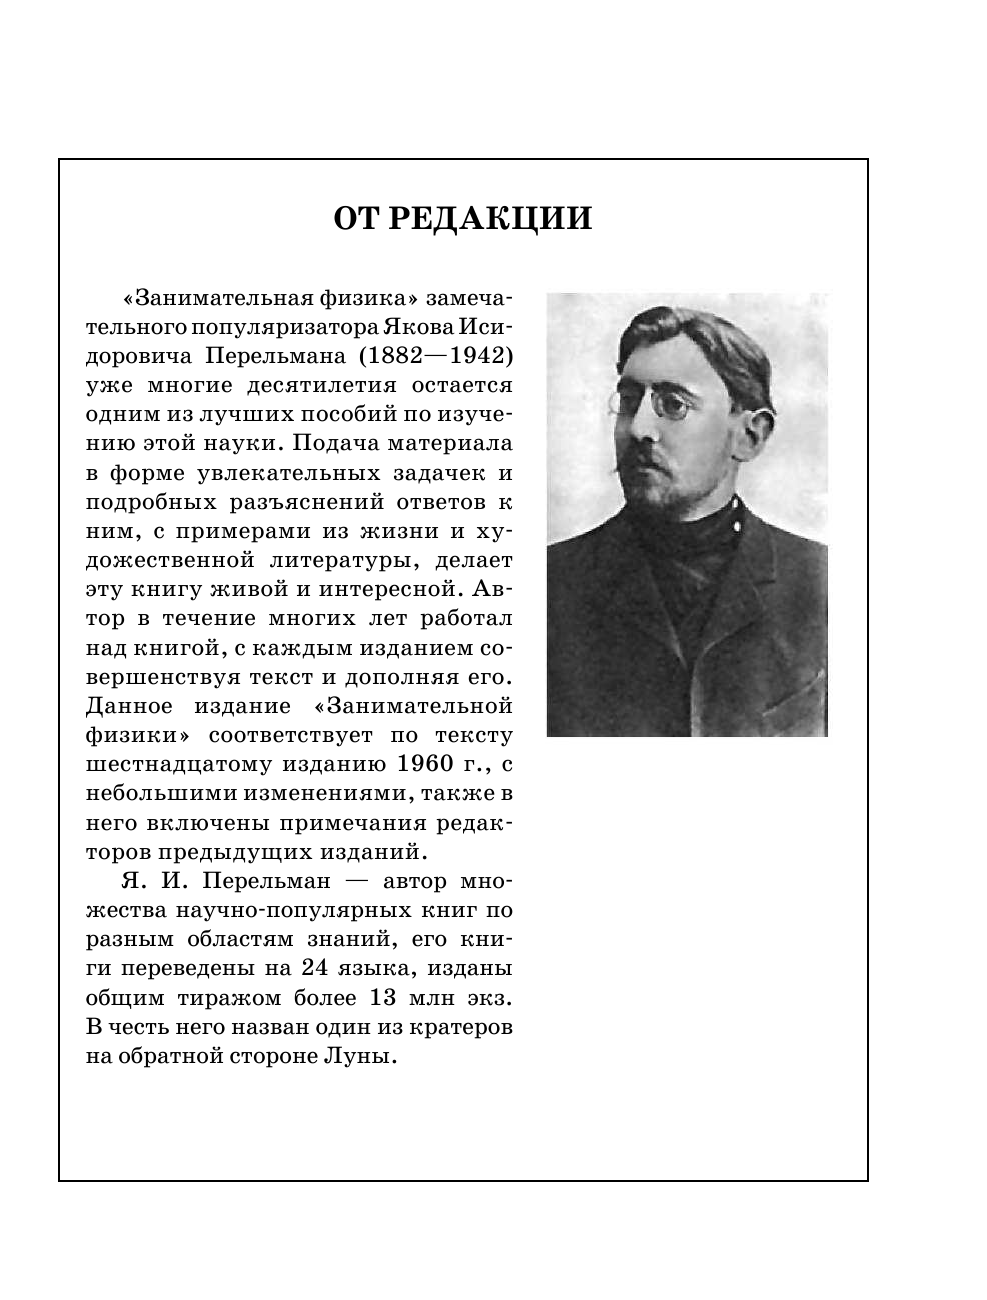 Перельман Яков Исидорович Занимательная физика - страница 4